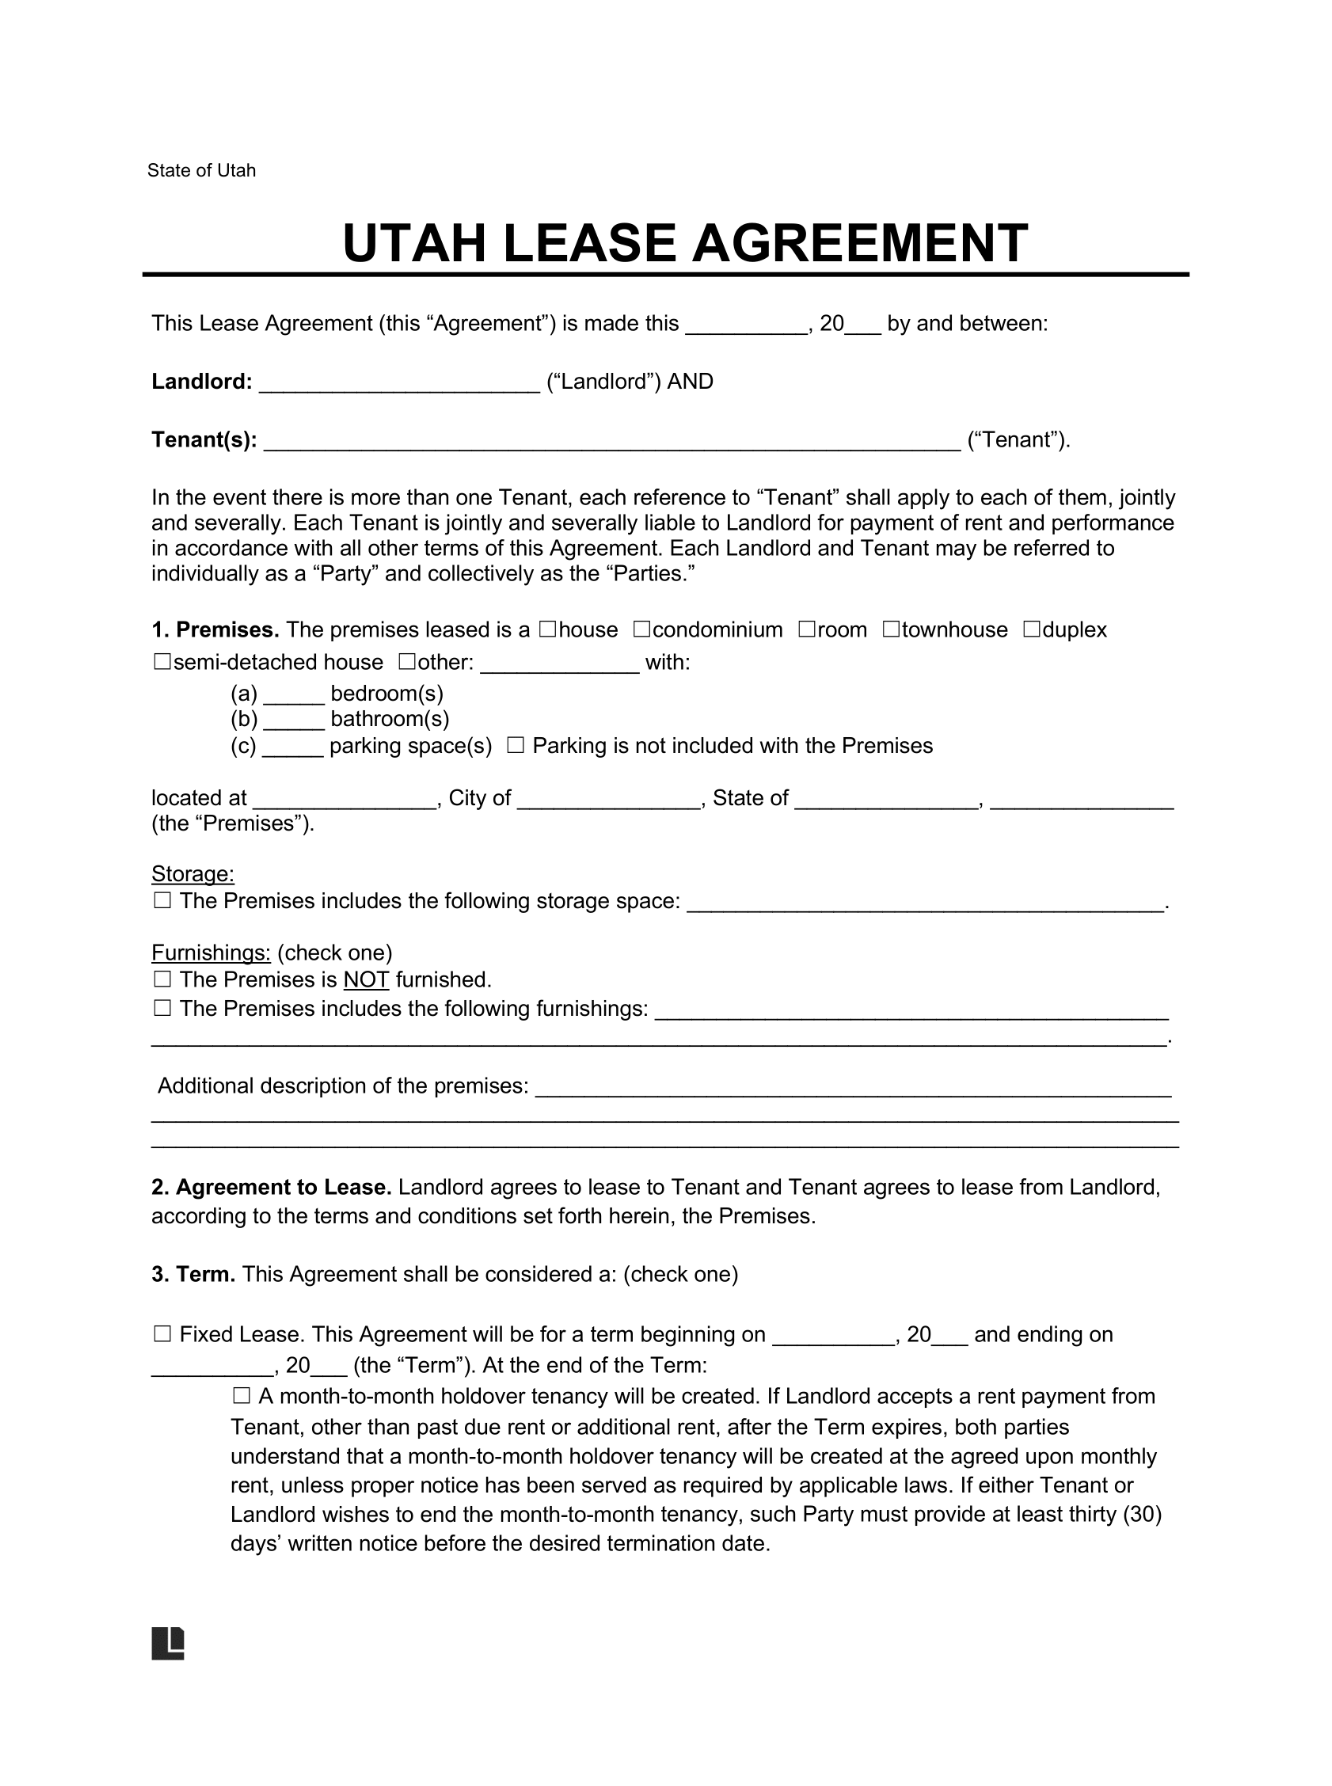 LegalTemplates Utah Residential Lease Agreement